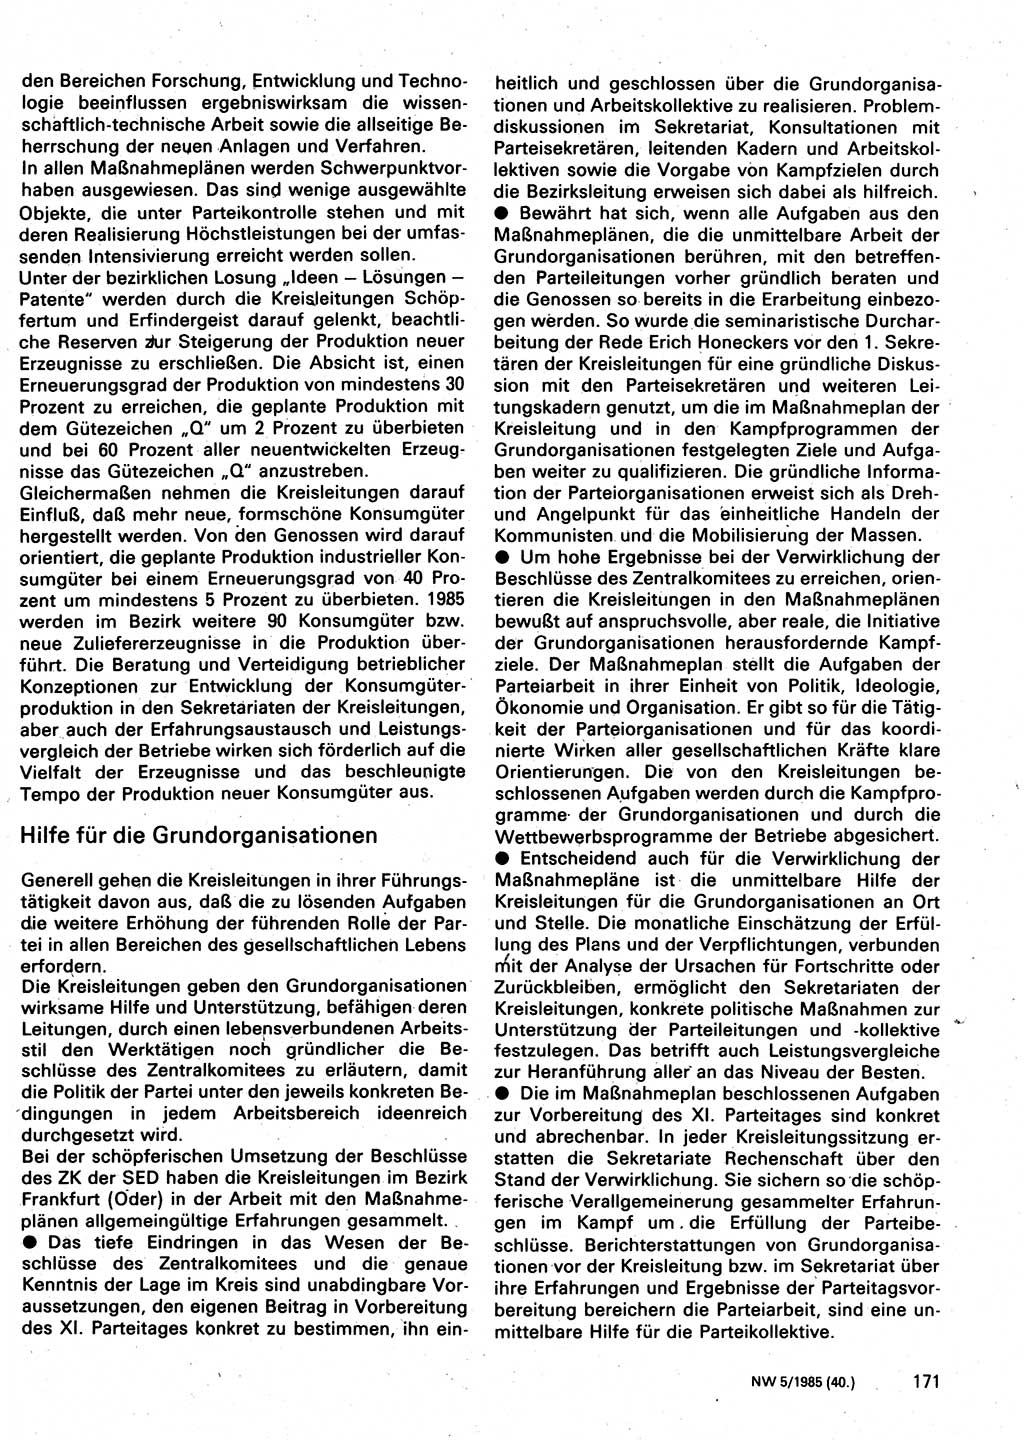 Neuer Weg (NW), Organ des Zentralkomitees (ZK) der SED (Sozialistische Einheitspartei Deutschlands) für Fragen des Parteilebens, 40. Jahrgang [Deutsche Demokratische Republik (DDR)] 1985, Seite 171 (NW ZK SED DDR 1985, S. 171)